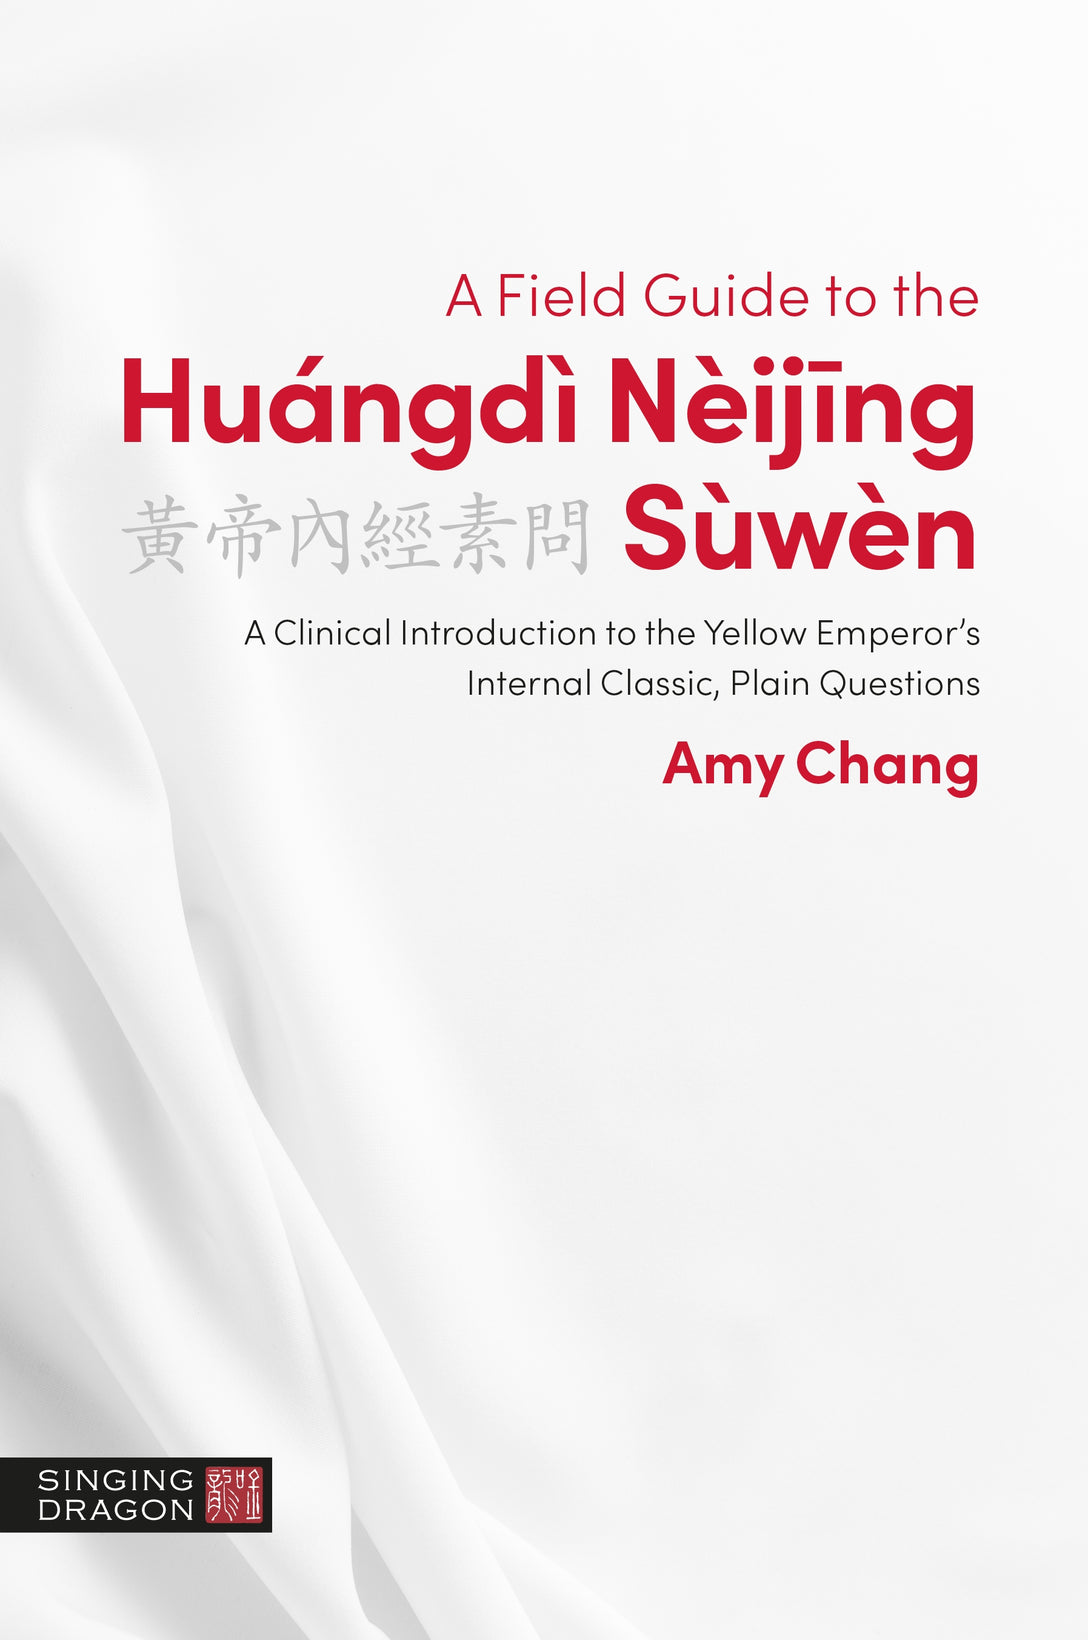 A Field Guide to the Huángdì Nèijing Sùwèn by Amy Chang